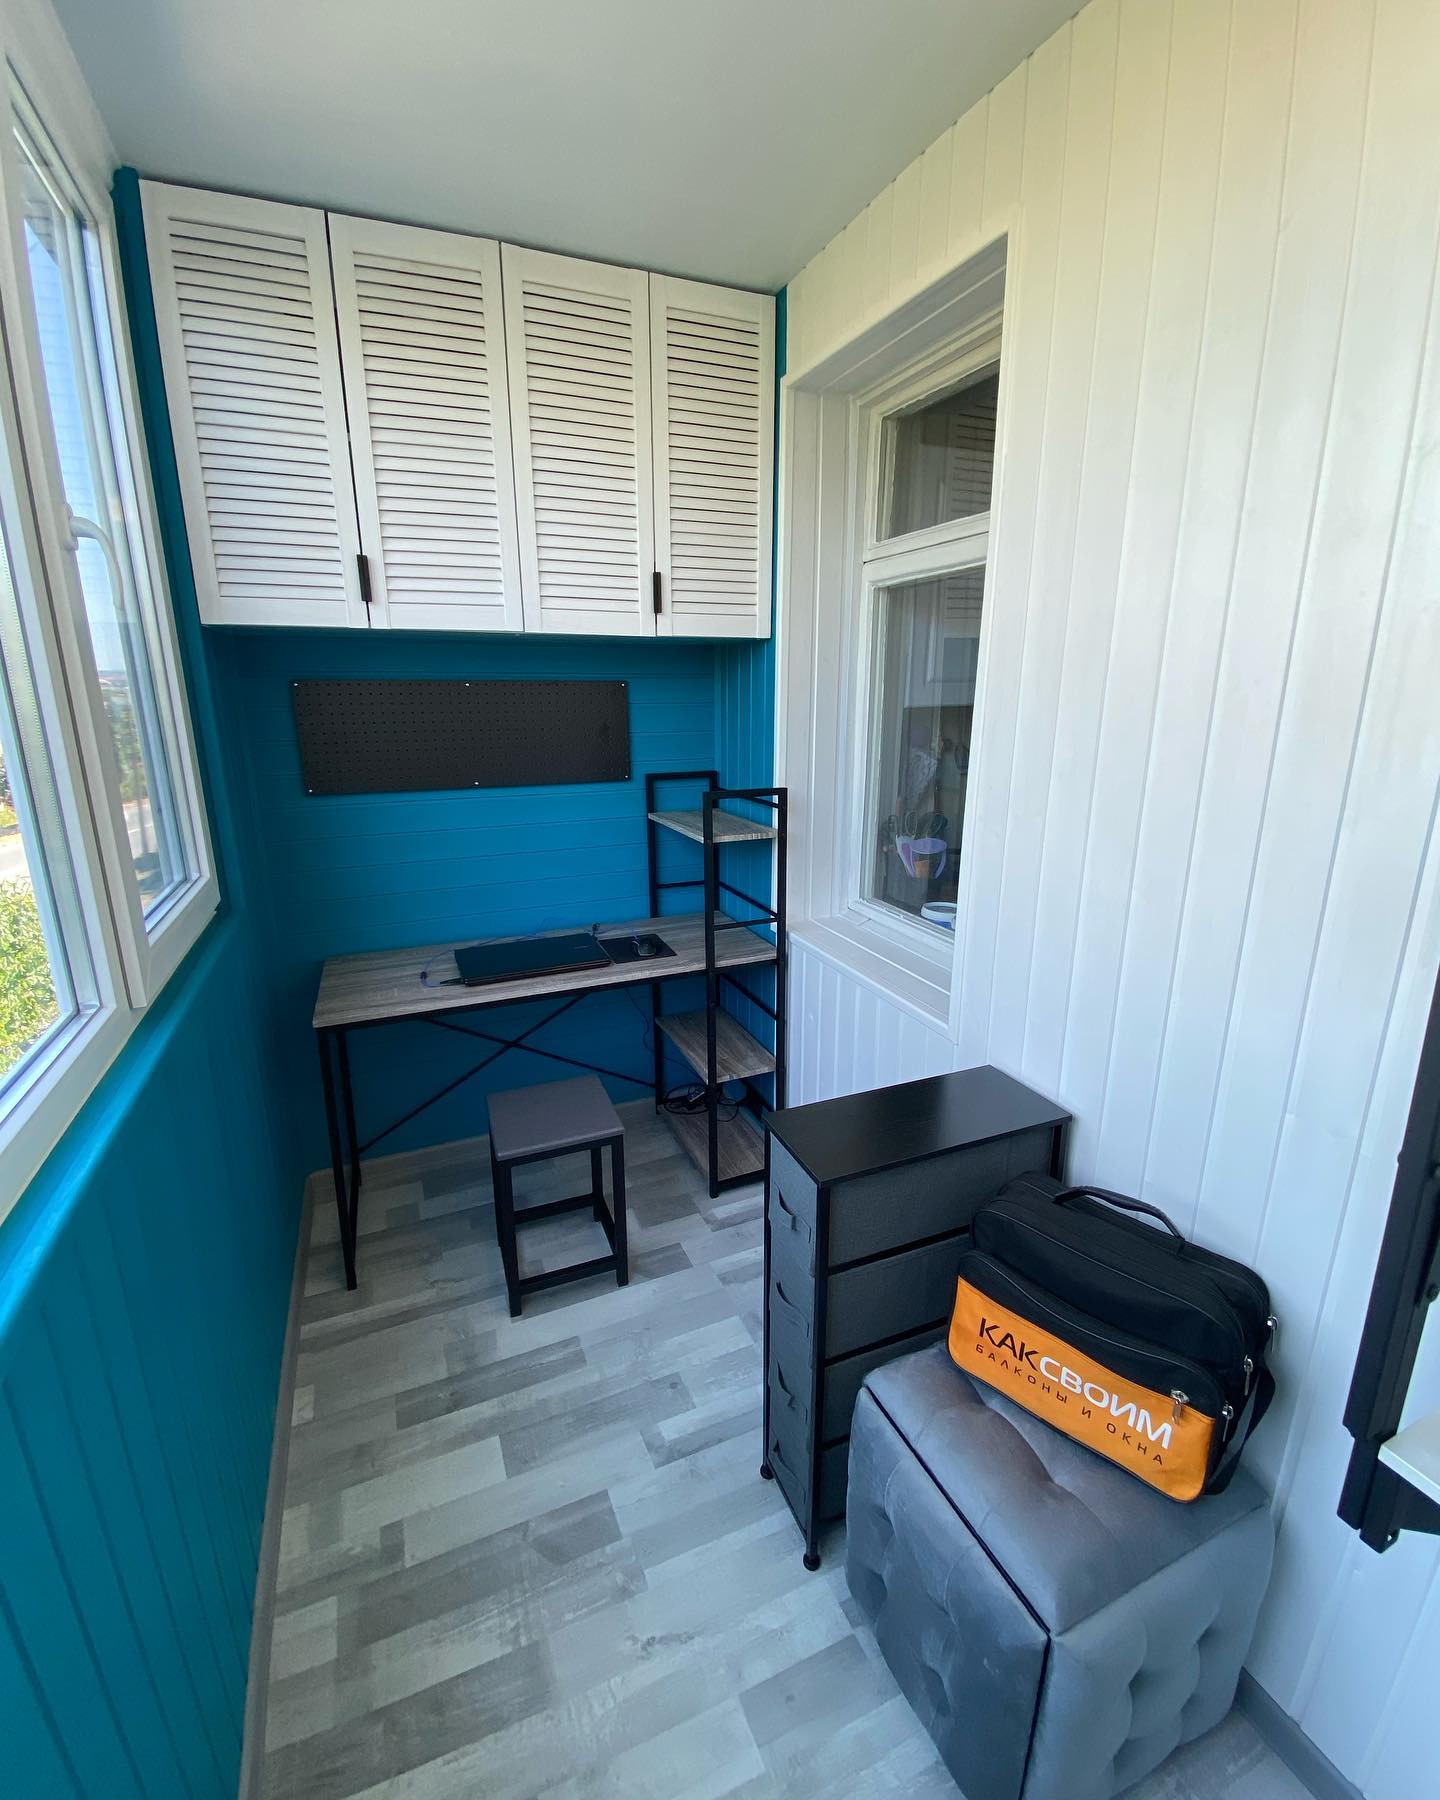 Кабинет с зоной для отдыха на лоджии с стиле “минимализм”. Дизайн и реализация от компании КАКСВОИМ